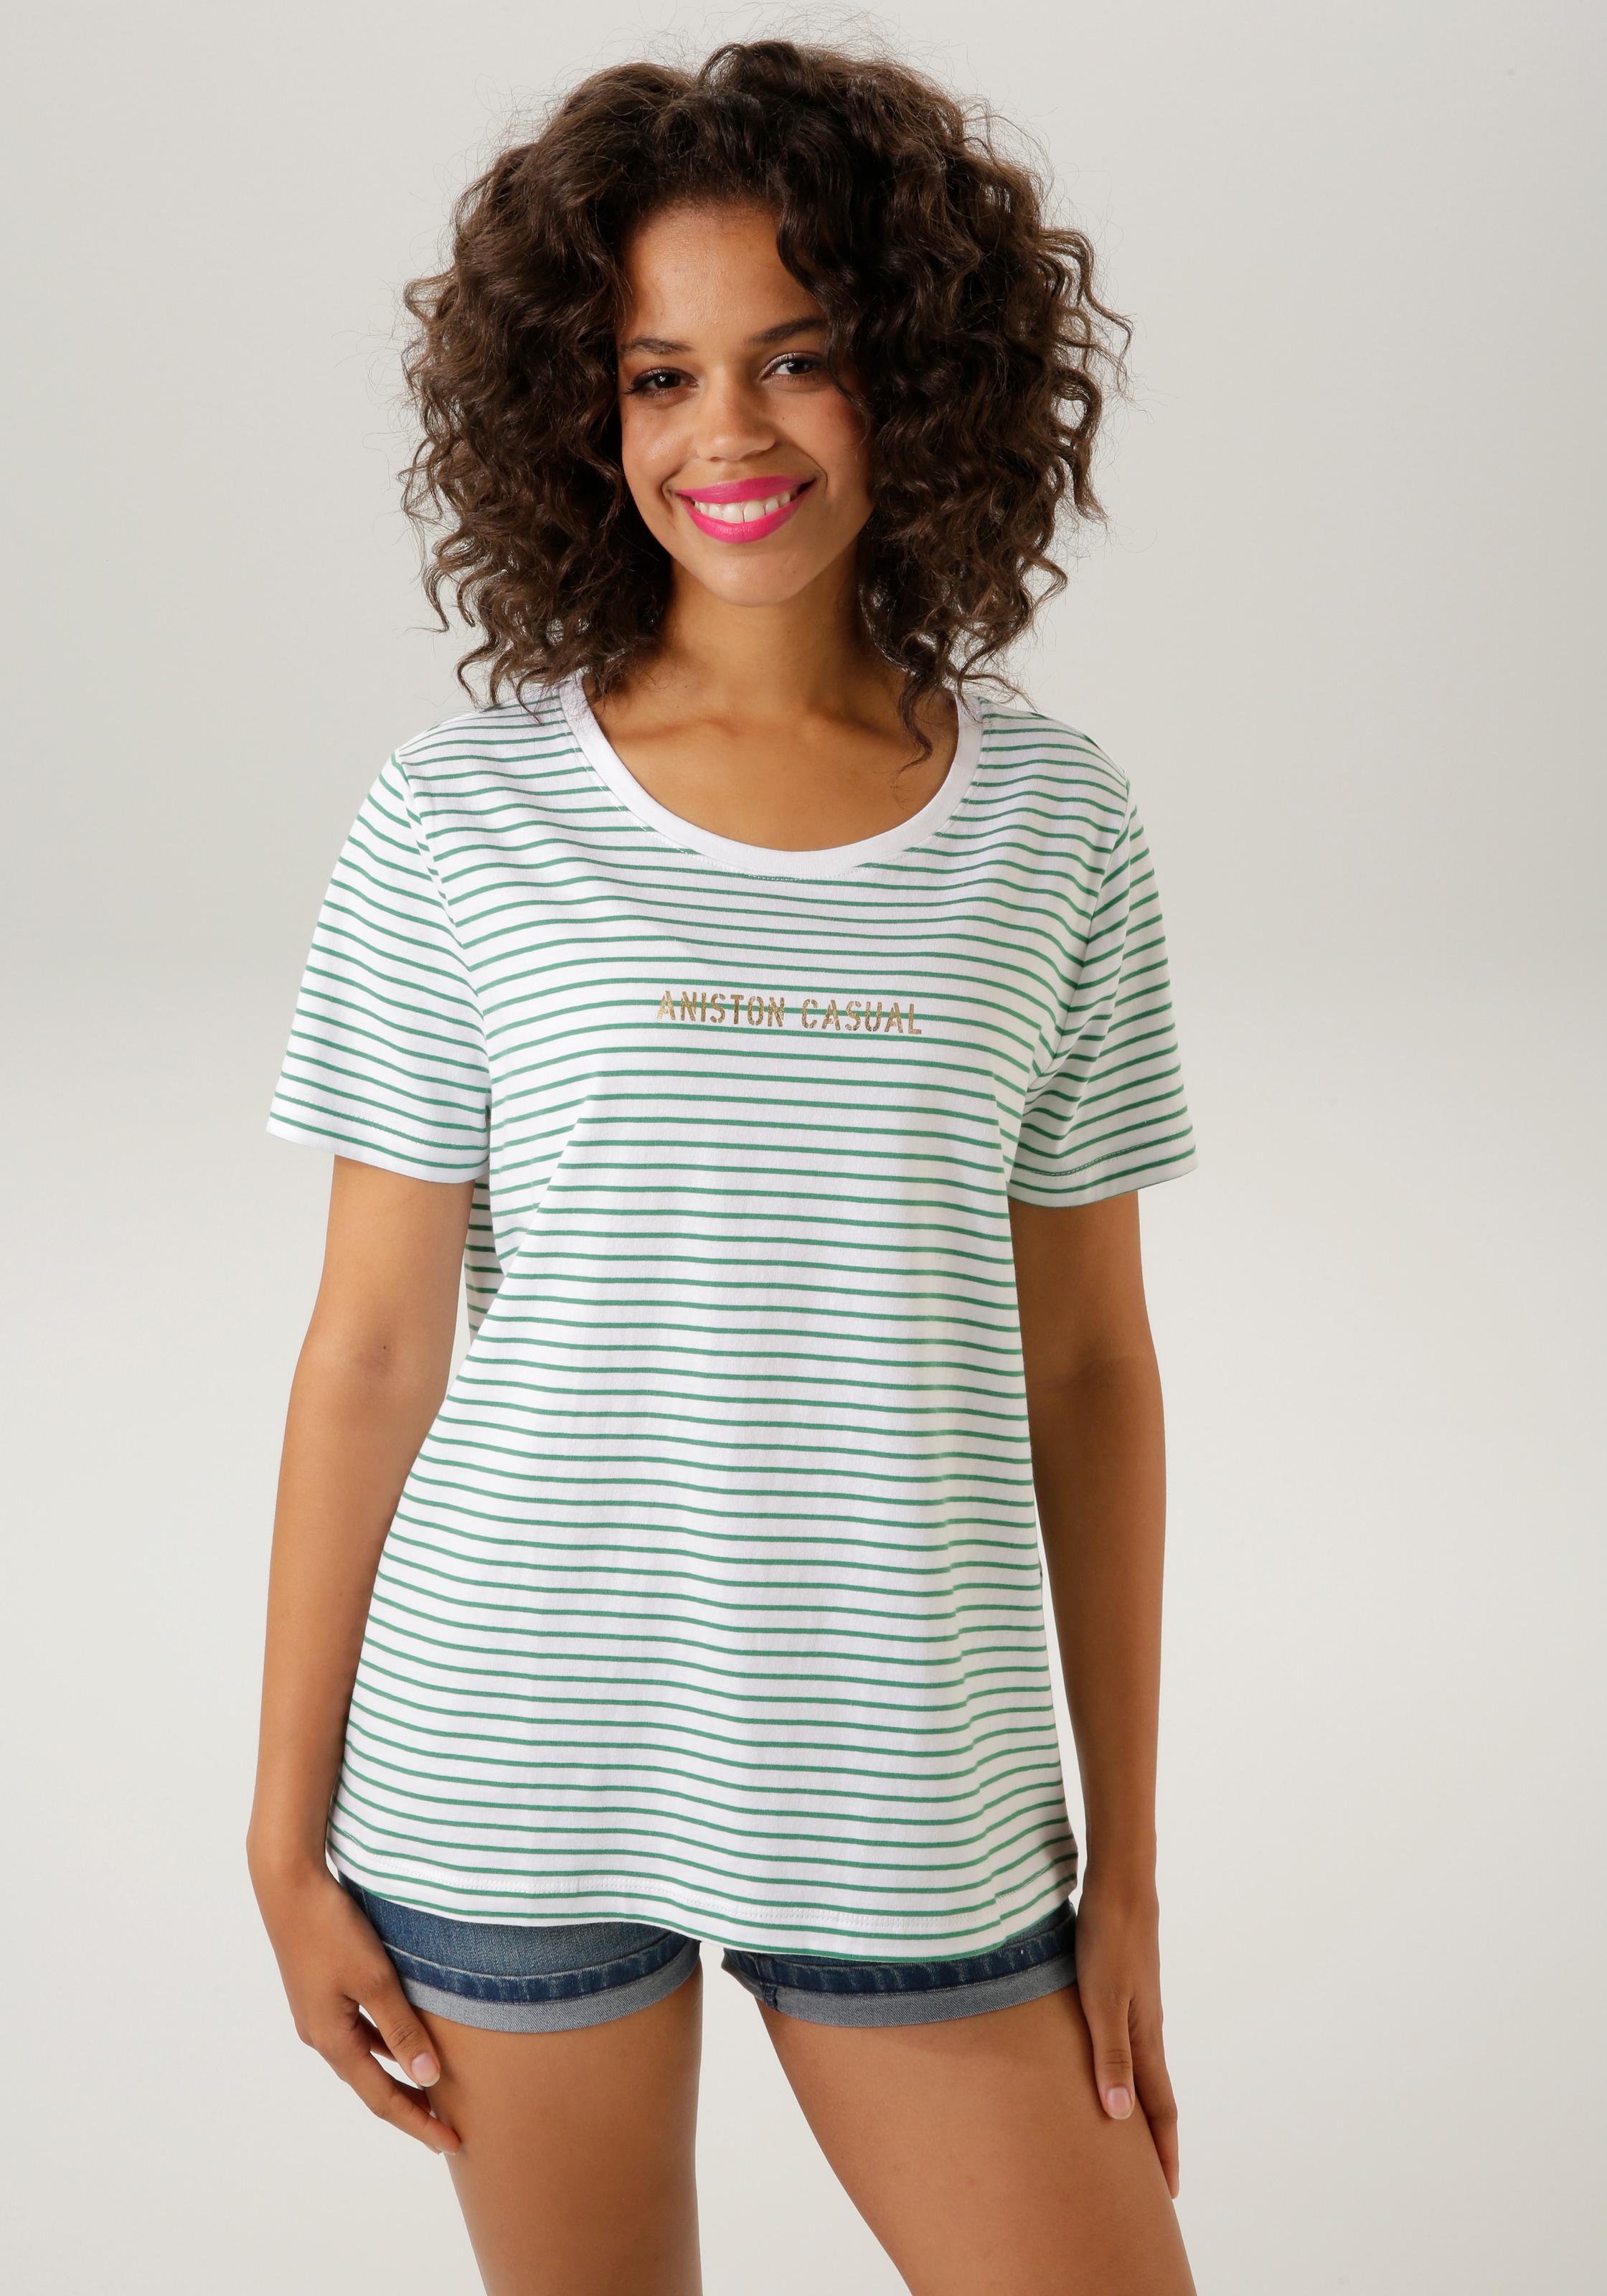 Aniston CASUAL T-Shirt, im Streifen-Dessin - NEUE KOLLEKTION online kaufen  | BAUR